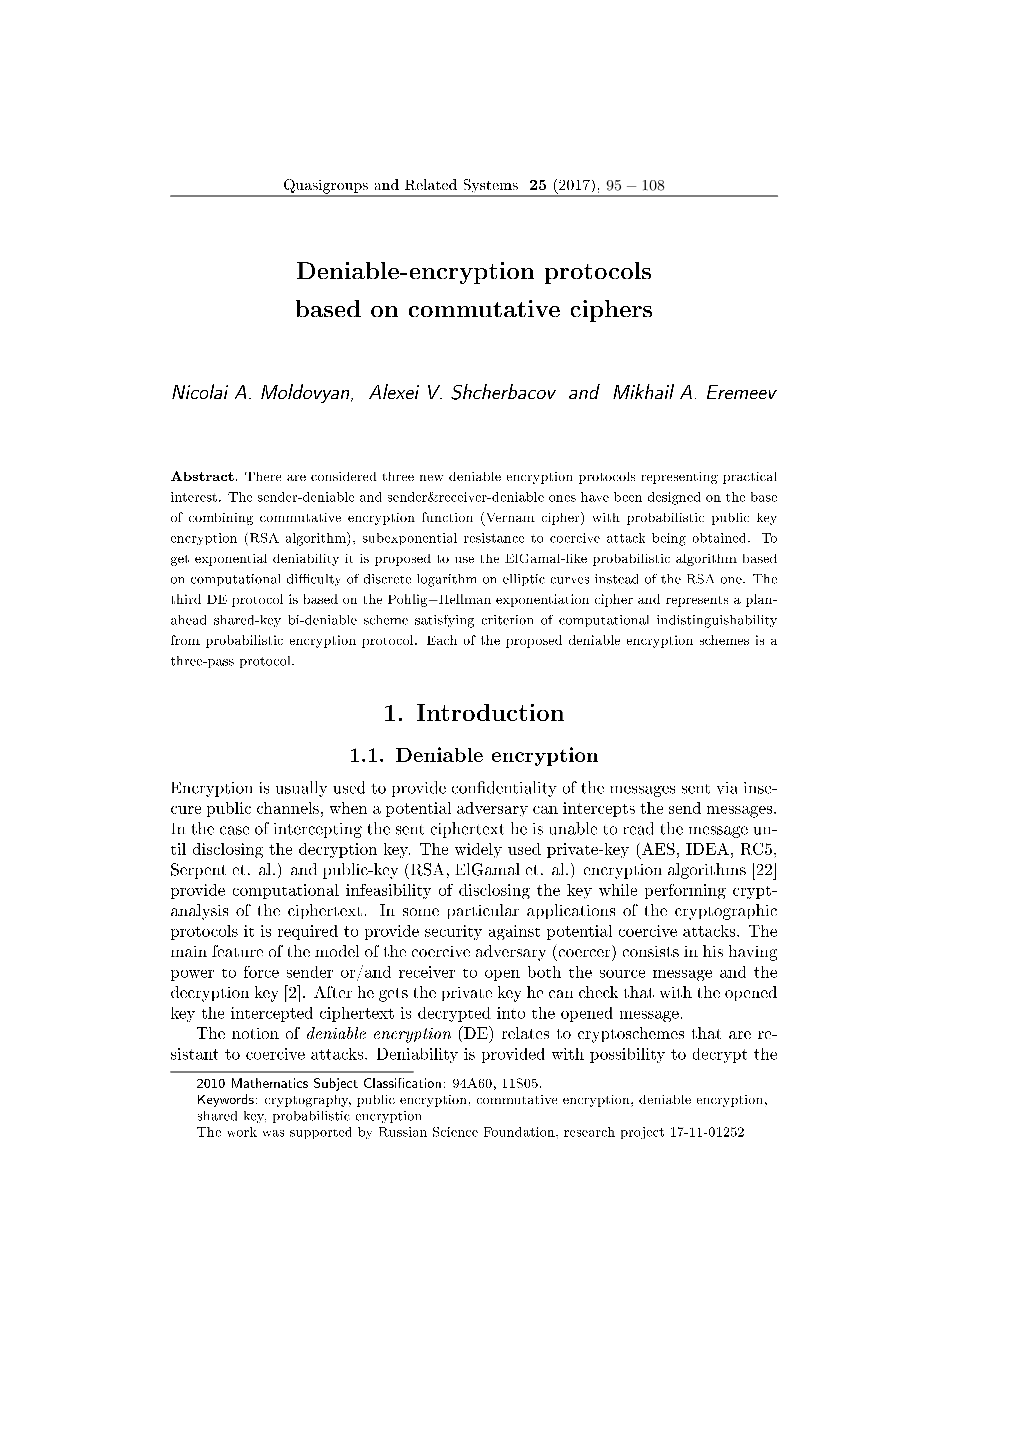 Deniable-Encryption Protocols Based on Commutative Ciphers 1. Introduction